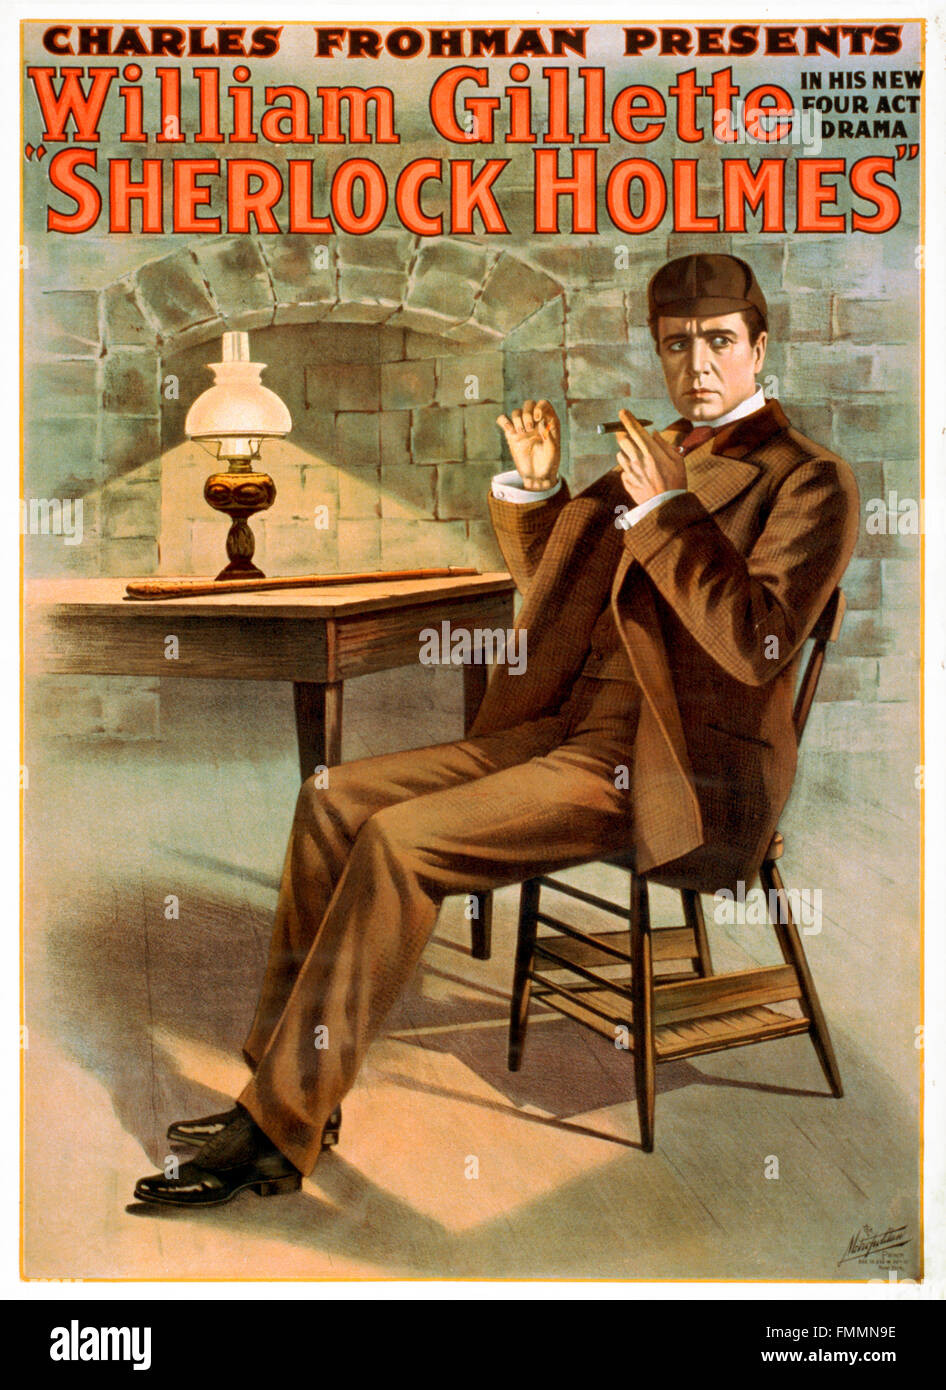 Sherlock Holmes. Plakat von 1900 Werbung des Schauspielers William Gillette spielen Sherlock Holmes in einem vier handeln Spiel basierend auf den Charakter. Stockfoto